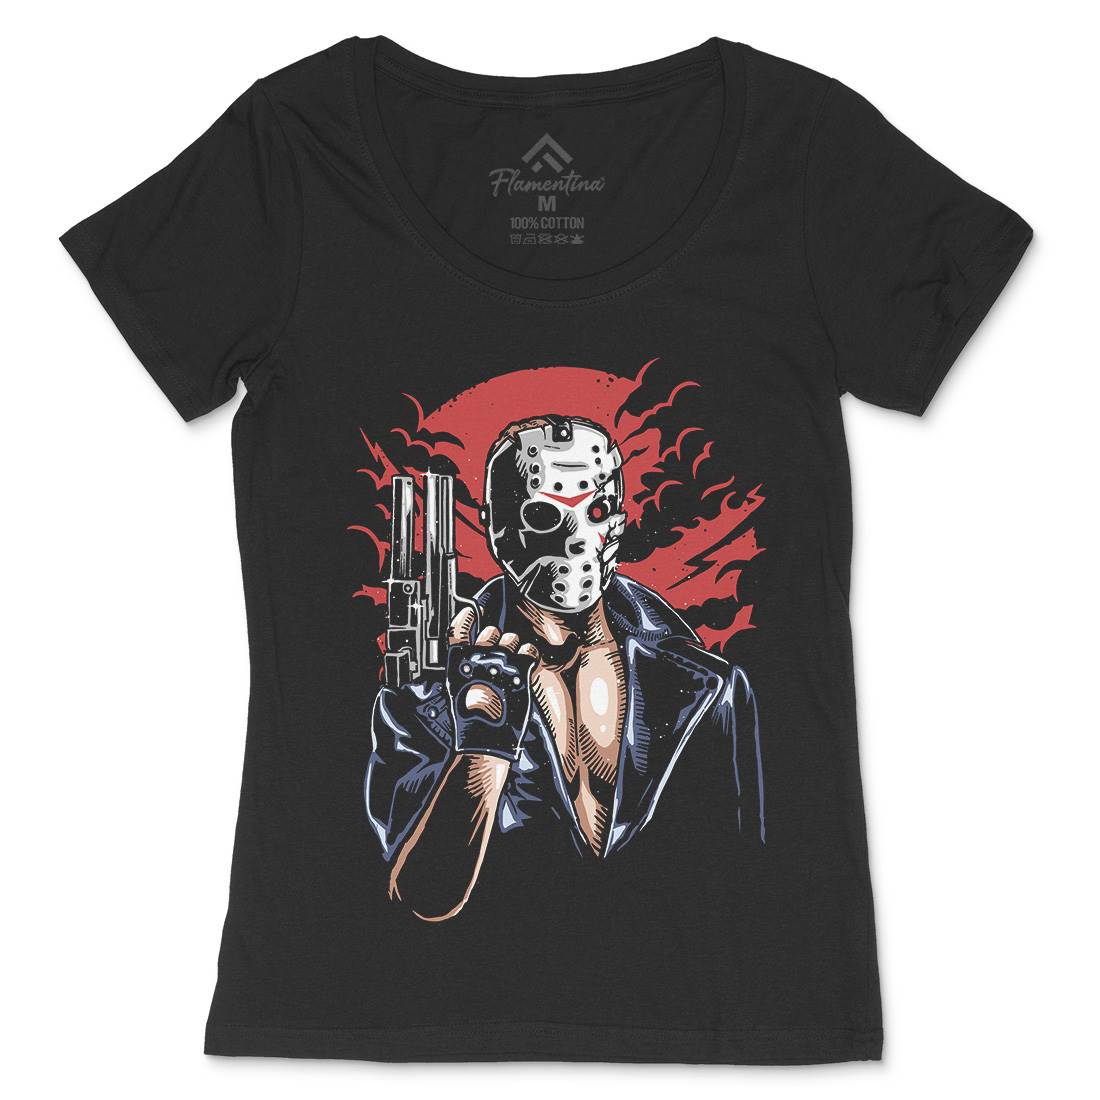 Jason Womens Scoop Neck T-Shirt Horror A548